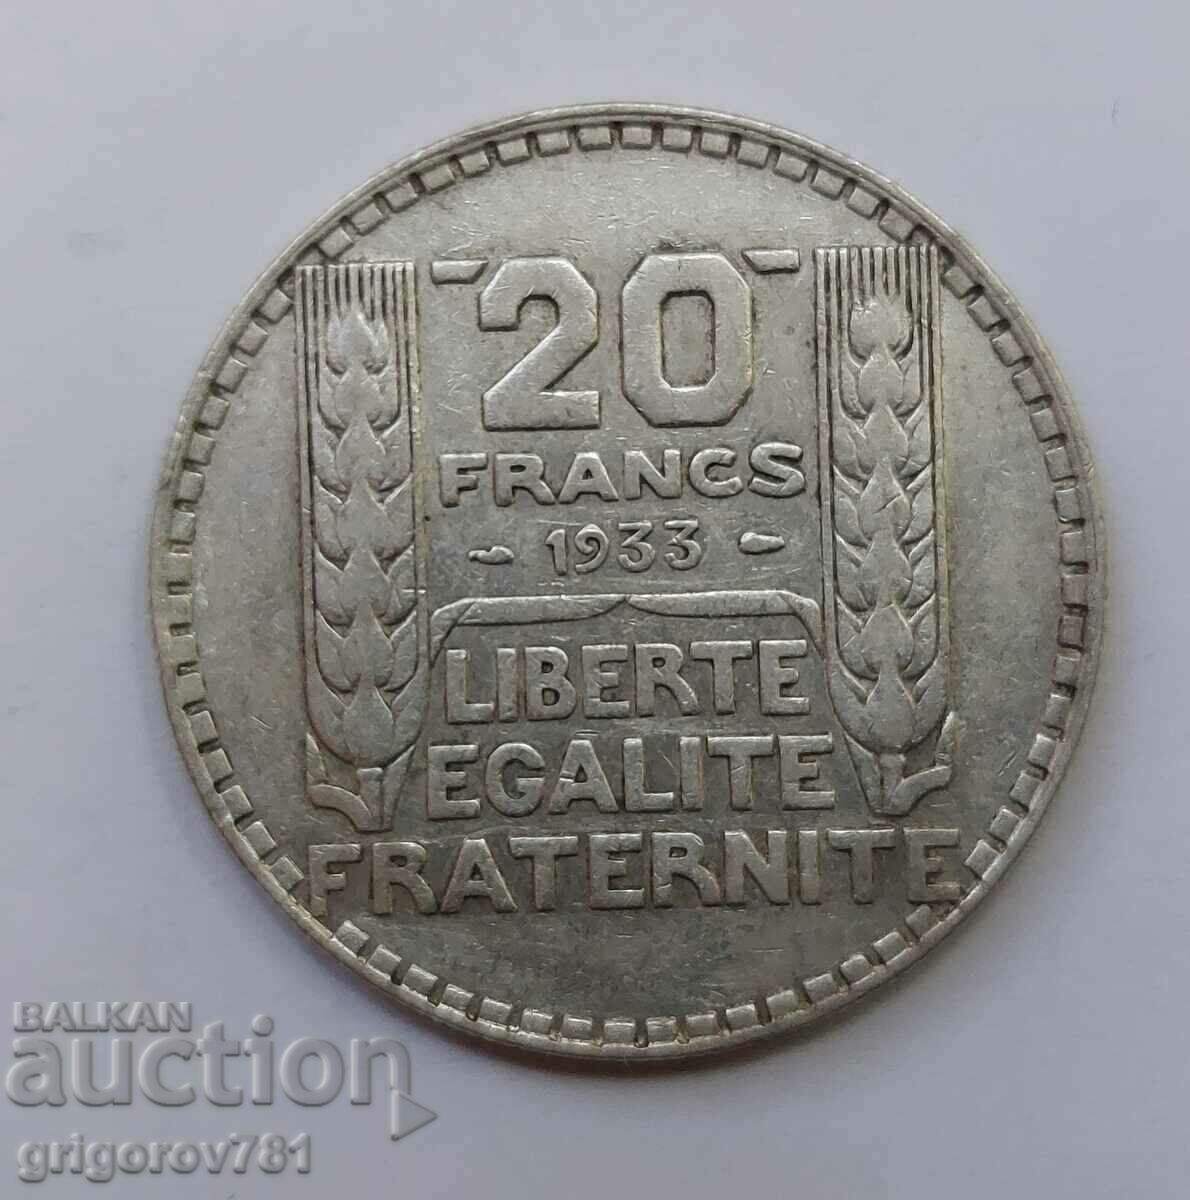 20 Φράγκα Ασήμι Γαλλία 1933 - Ασημένιο νόμισμα #26